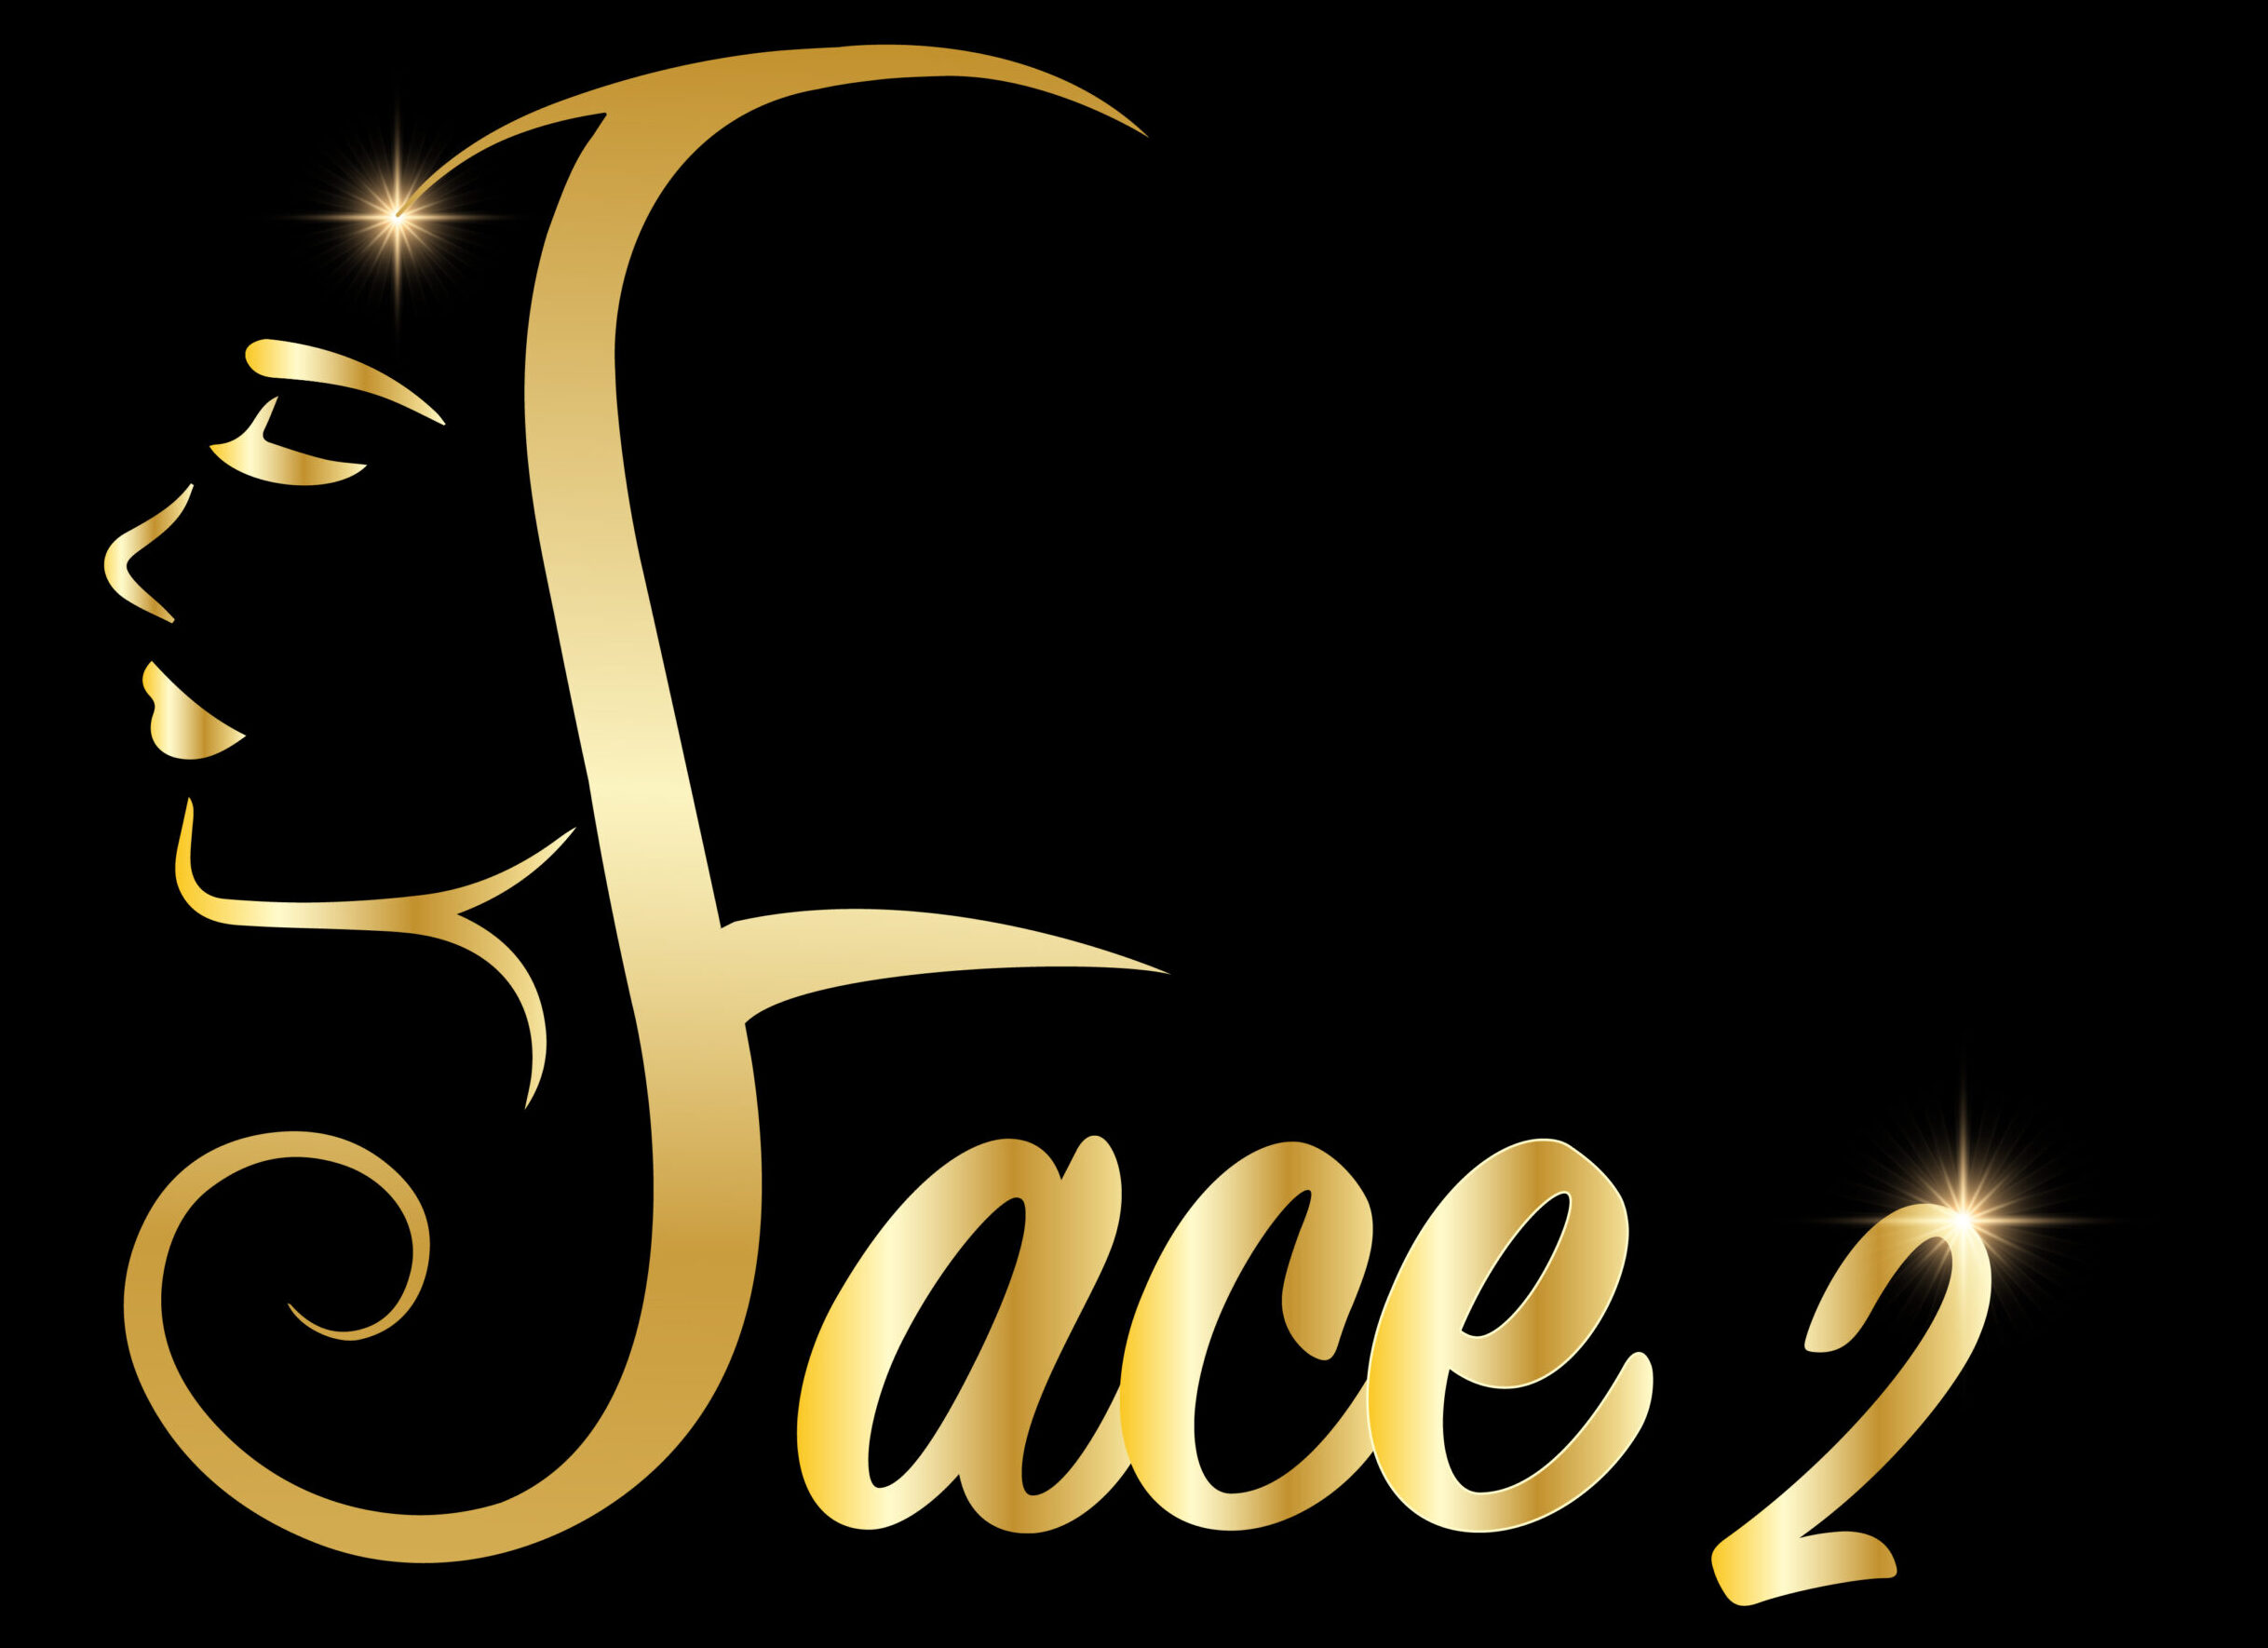 Face2 Enterprises